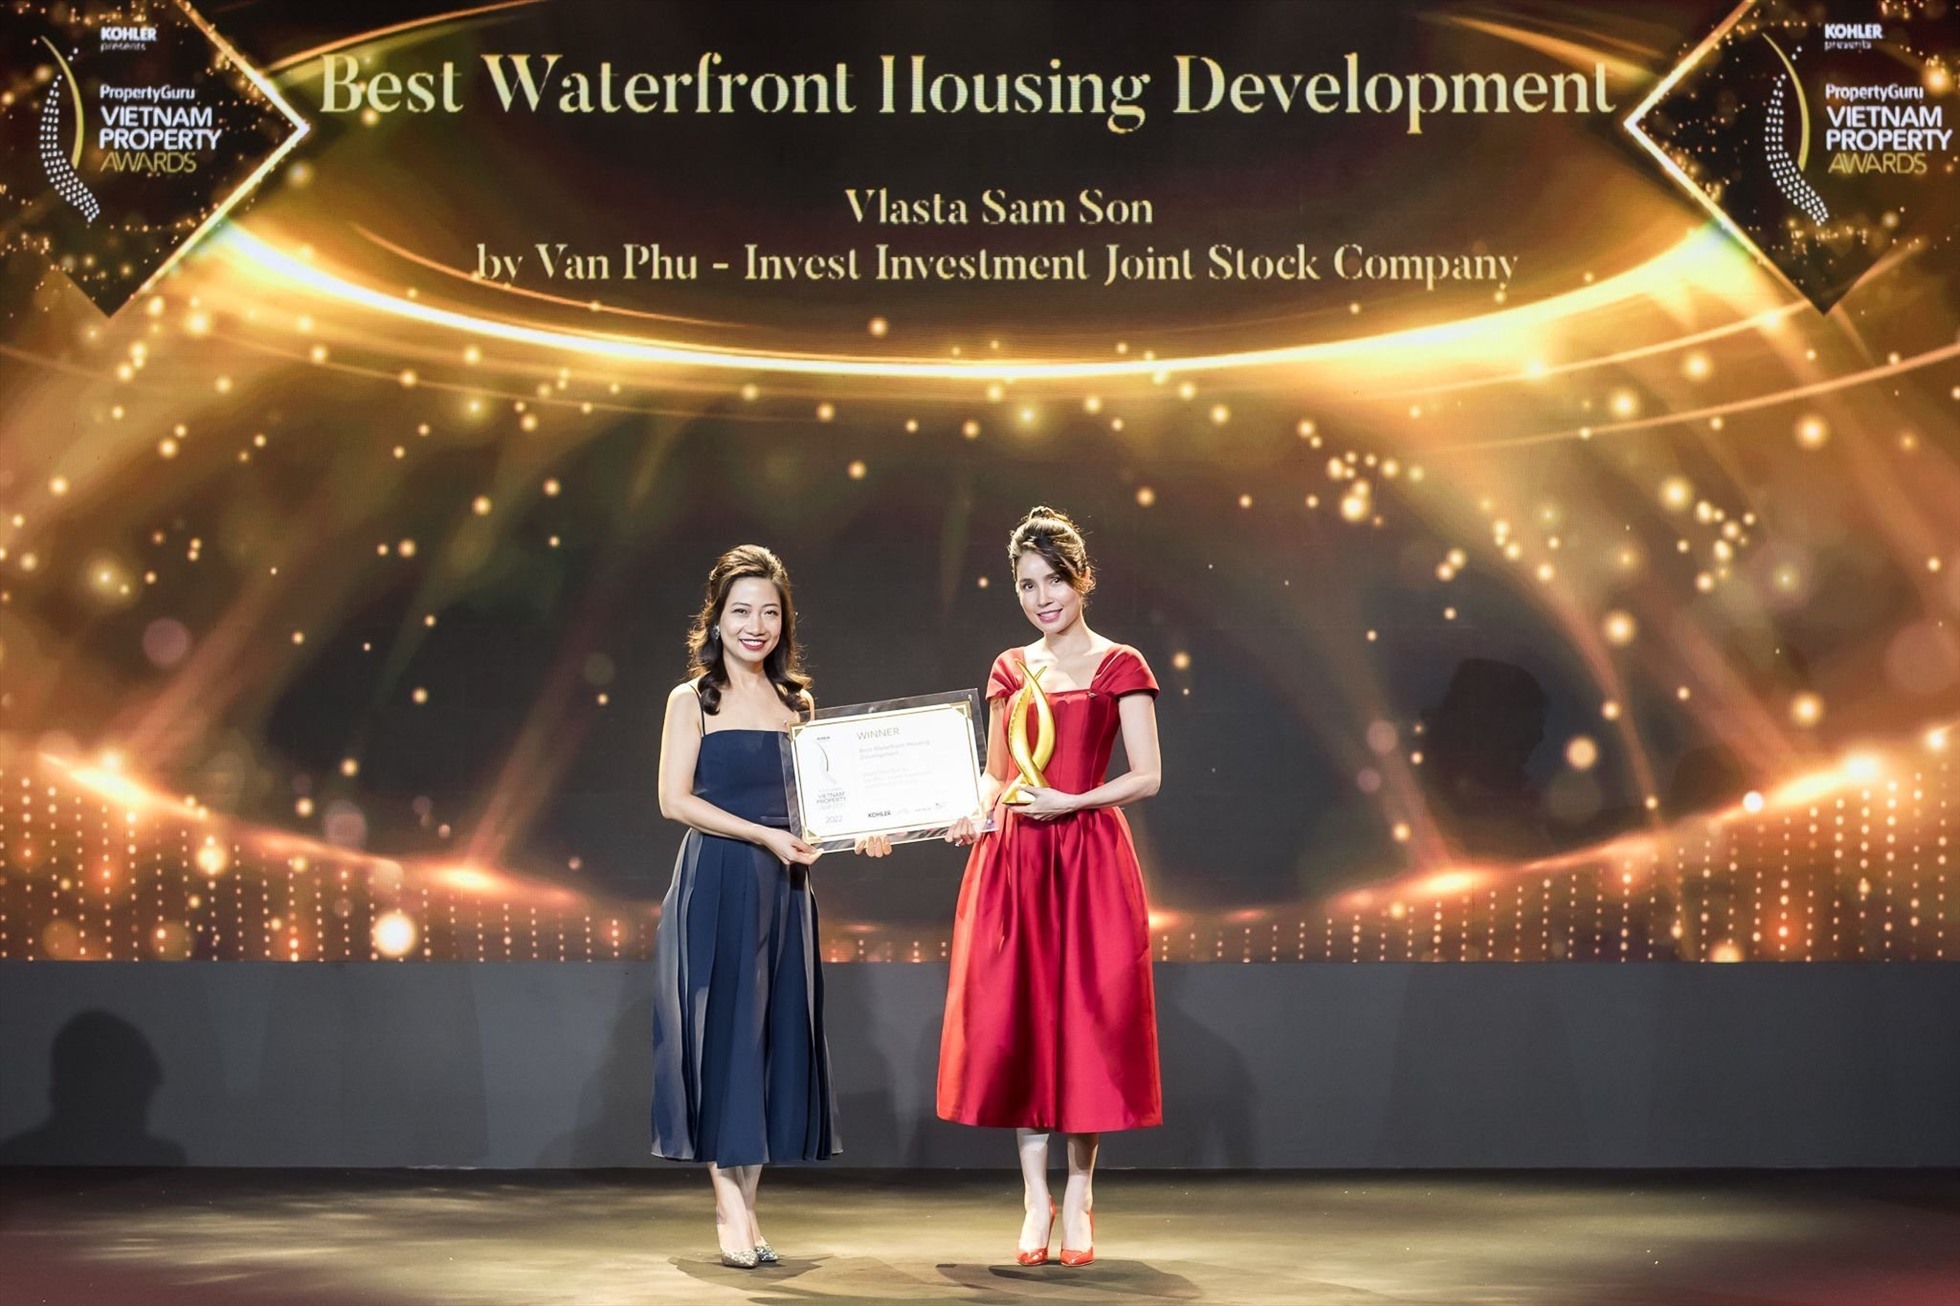 Đại diện Văn Phú – Invest nhận giải thưởng Best Waterfront Housing Development